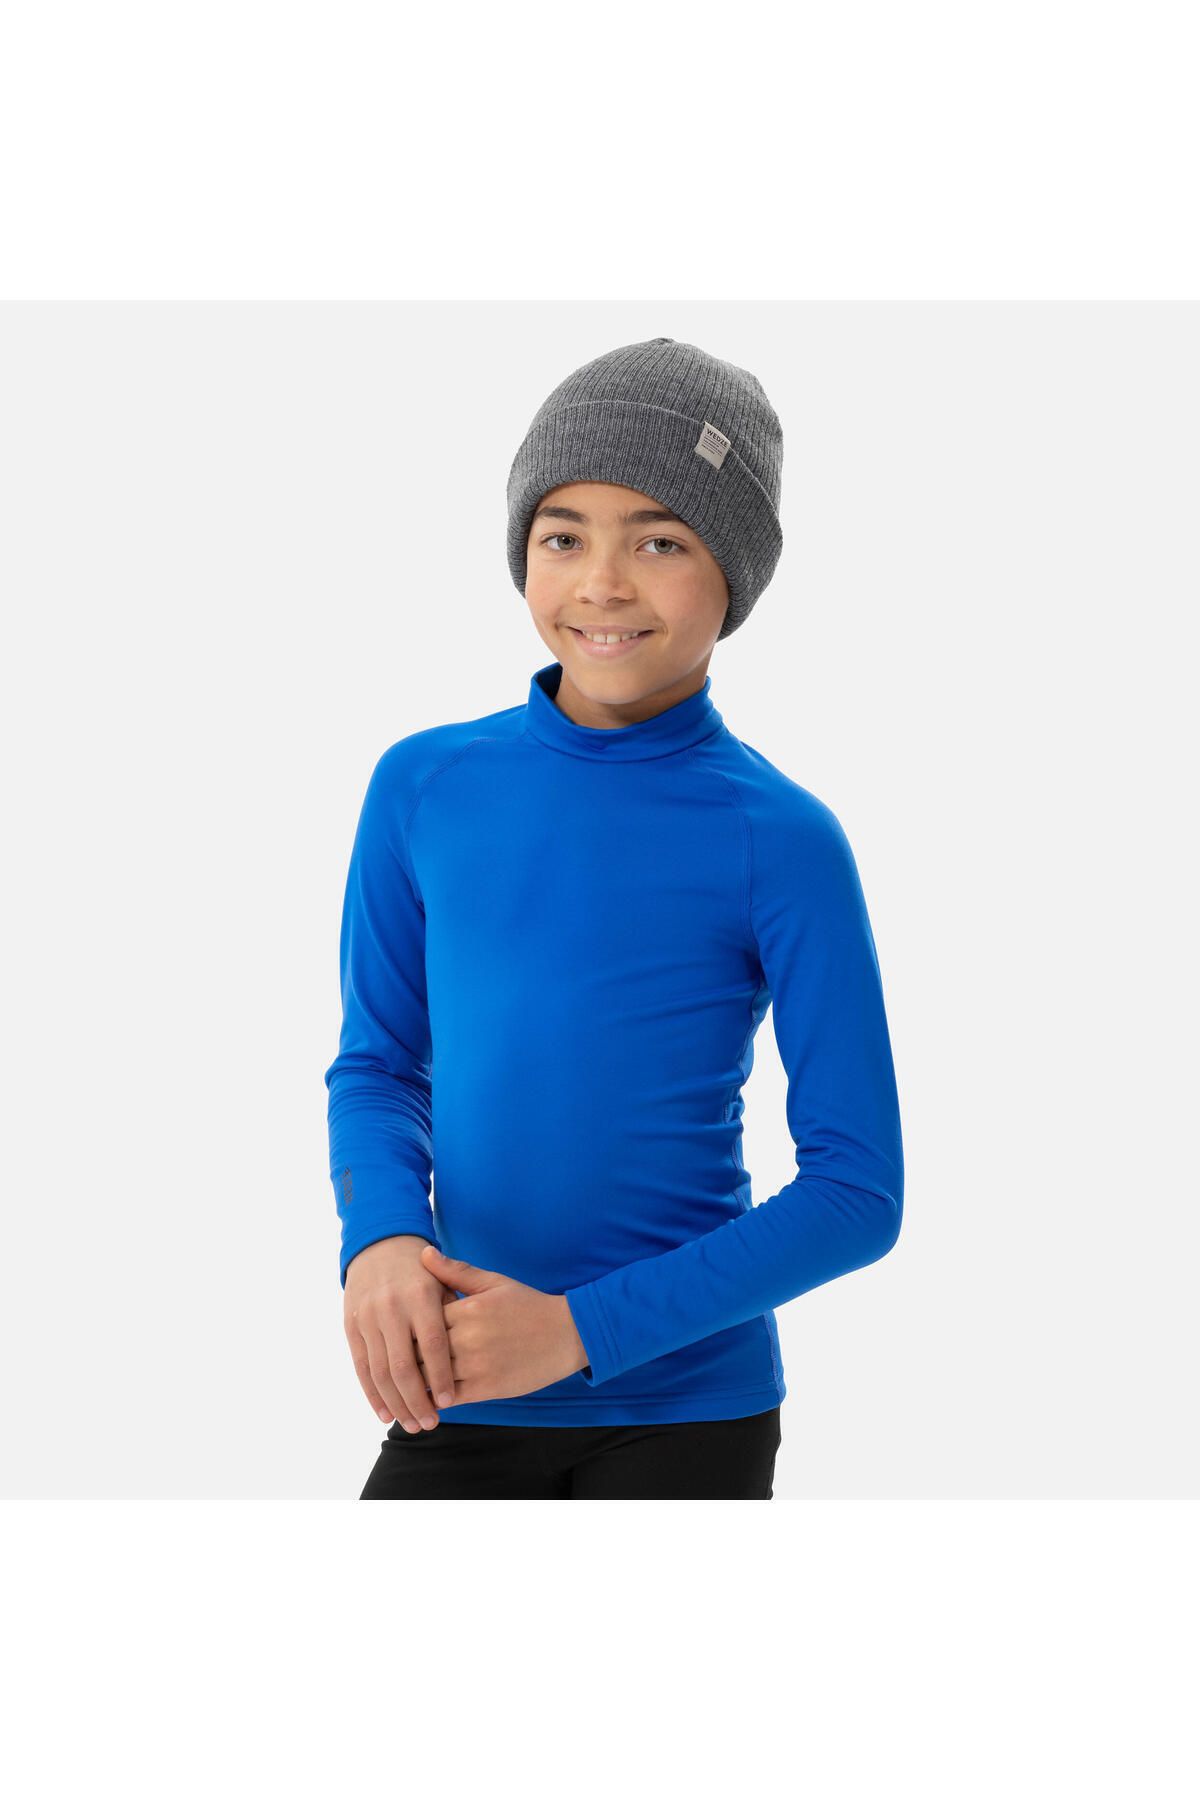 Decathlon Children's Thermal Ski Underwear - Black - Bl 500 - Trendyol